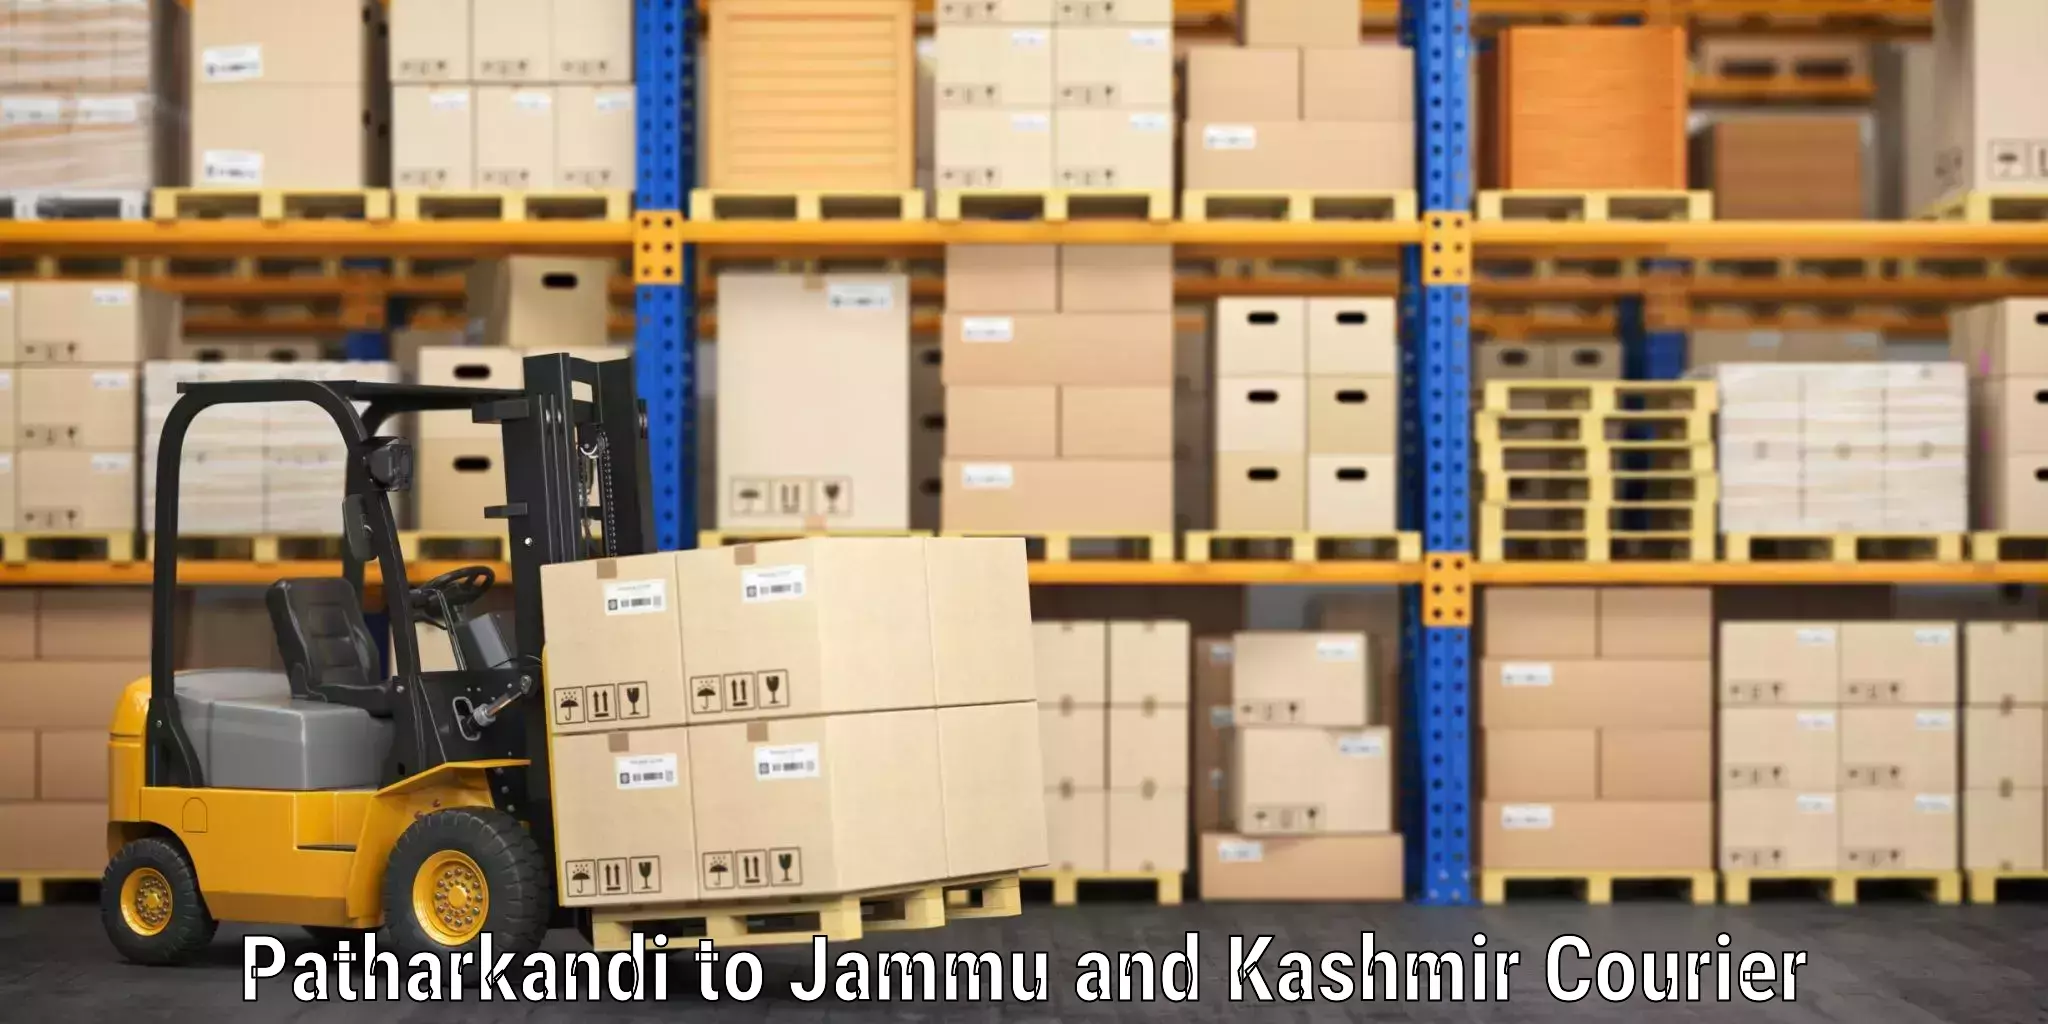 Luggage dispatch service Patharkandi to Jammu and Kashmir